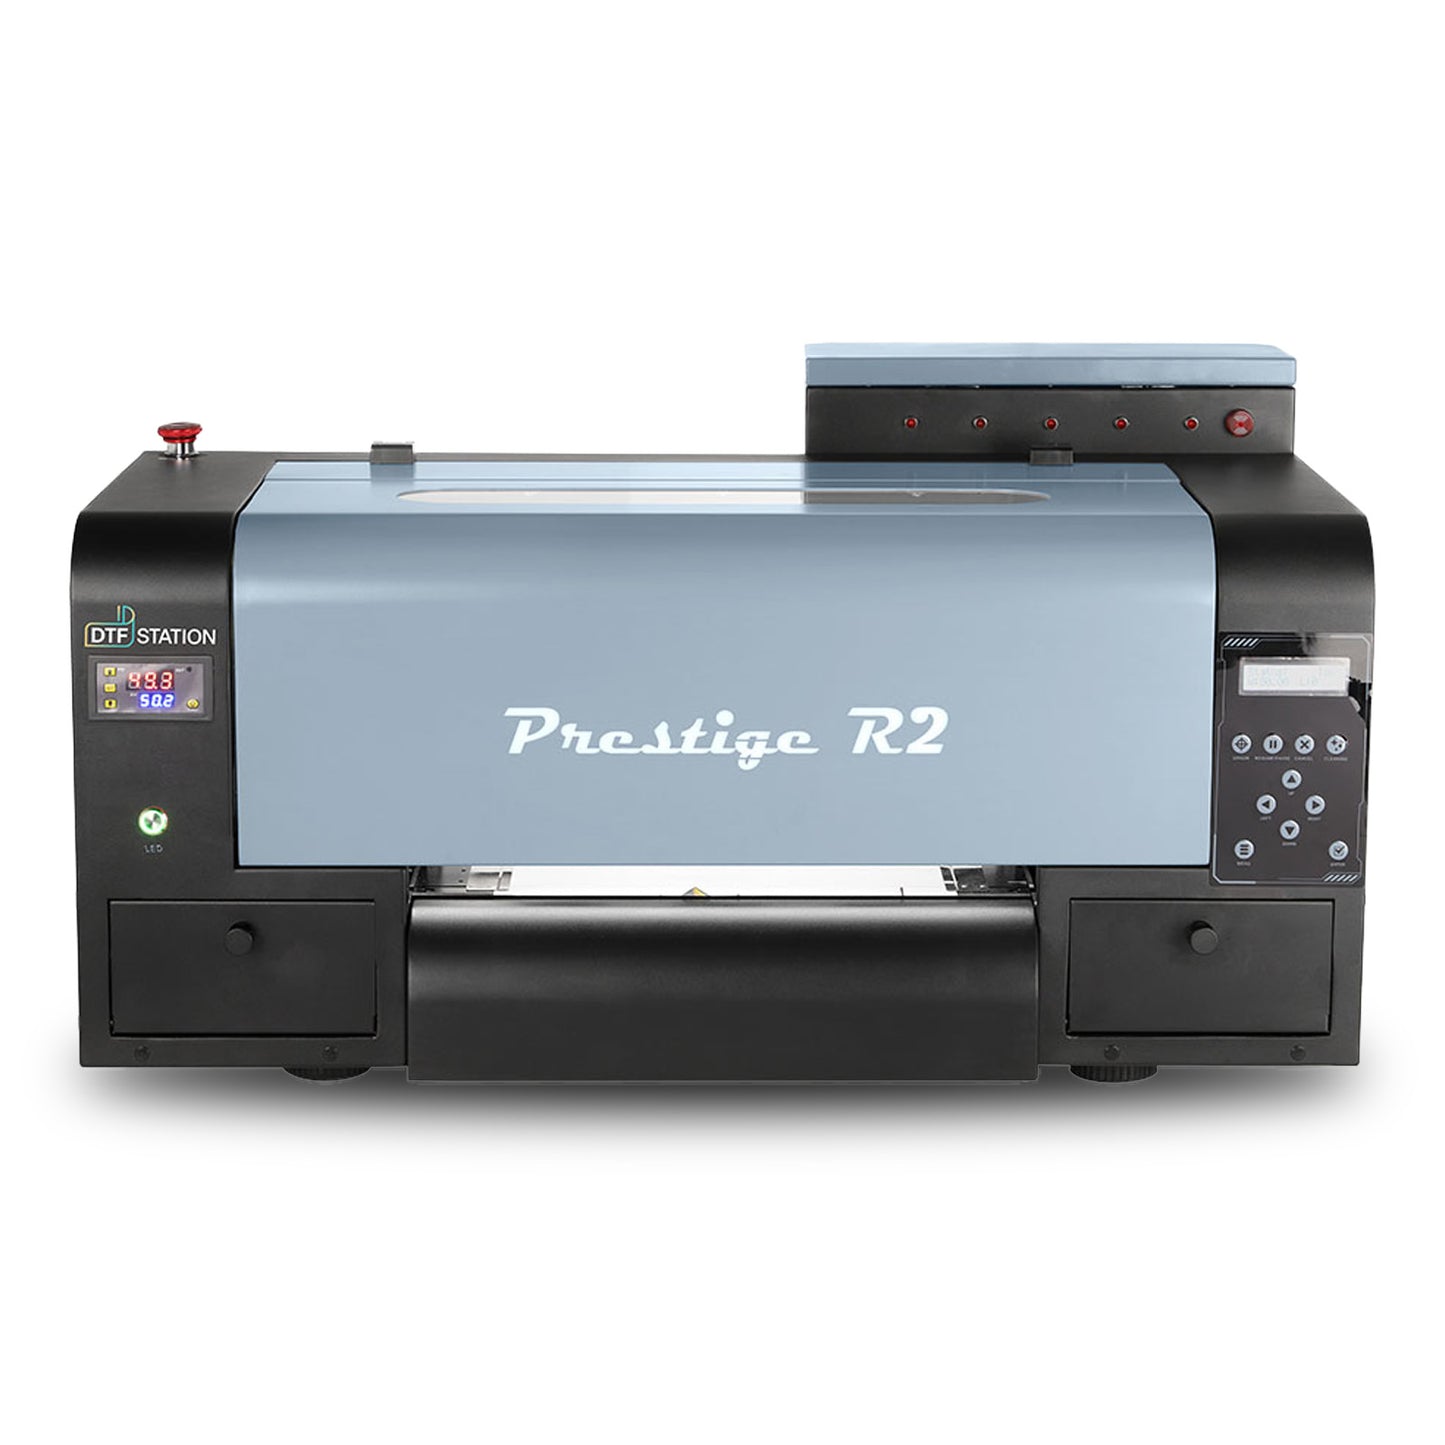 Prestige R2 DTF Printer